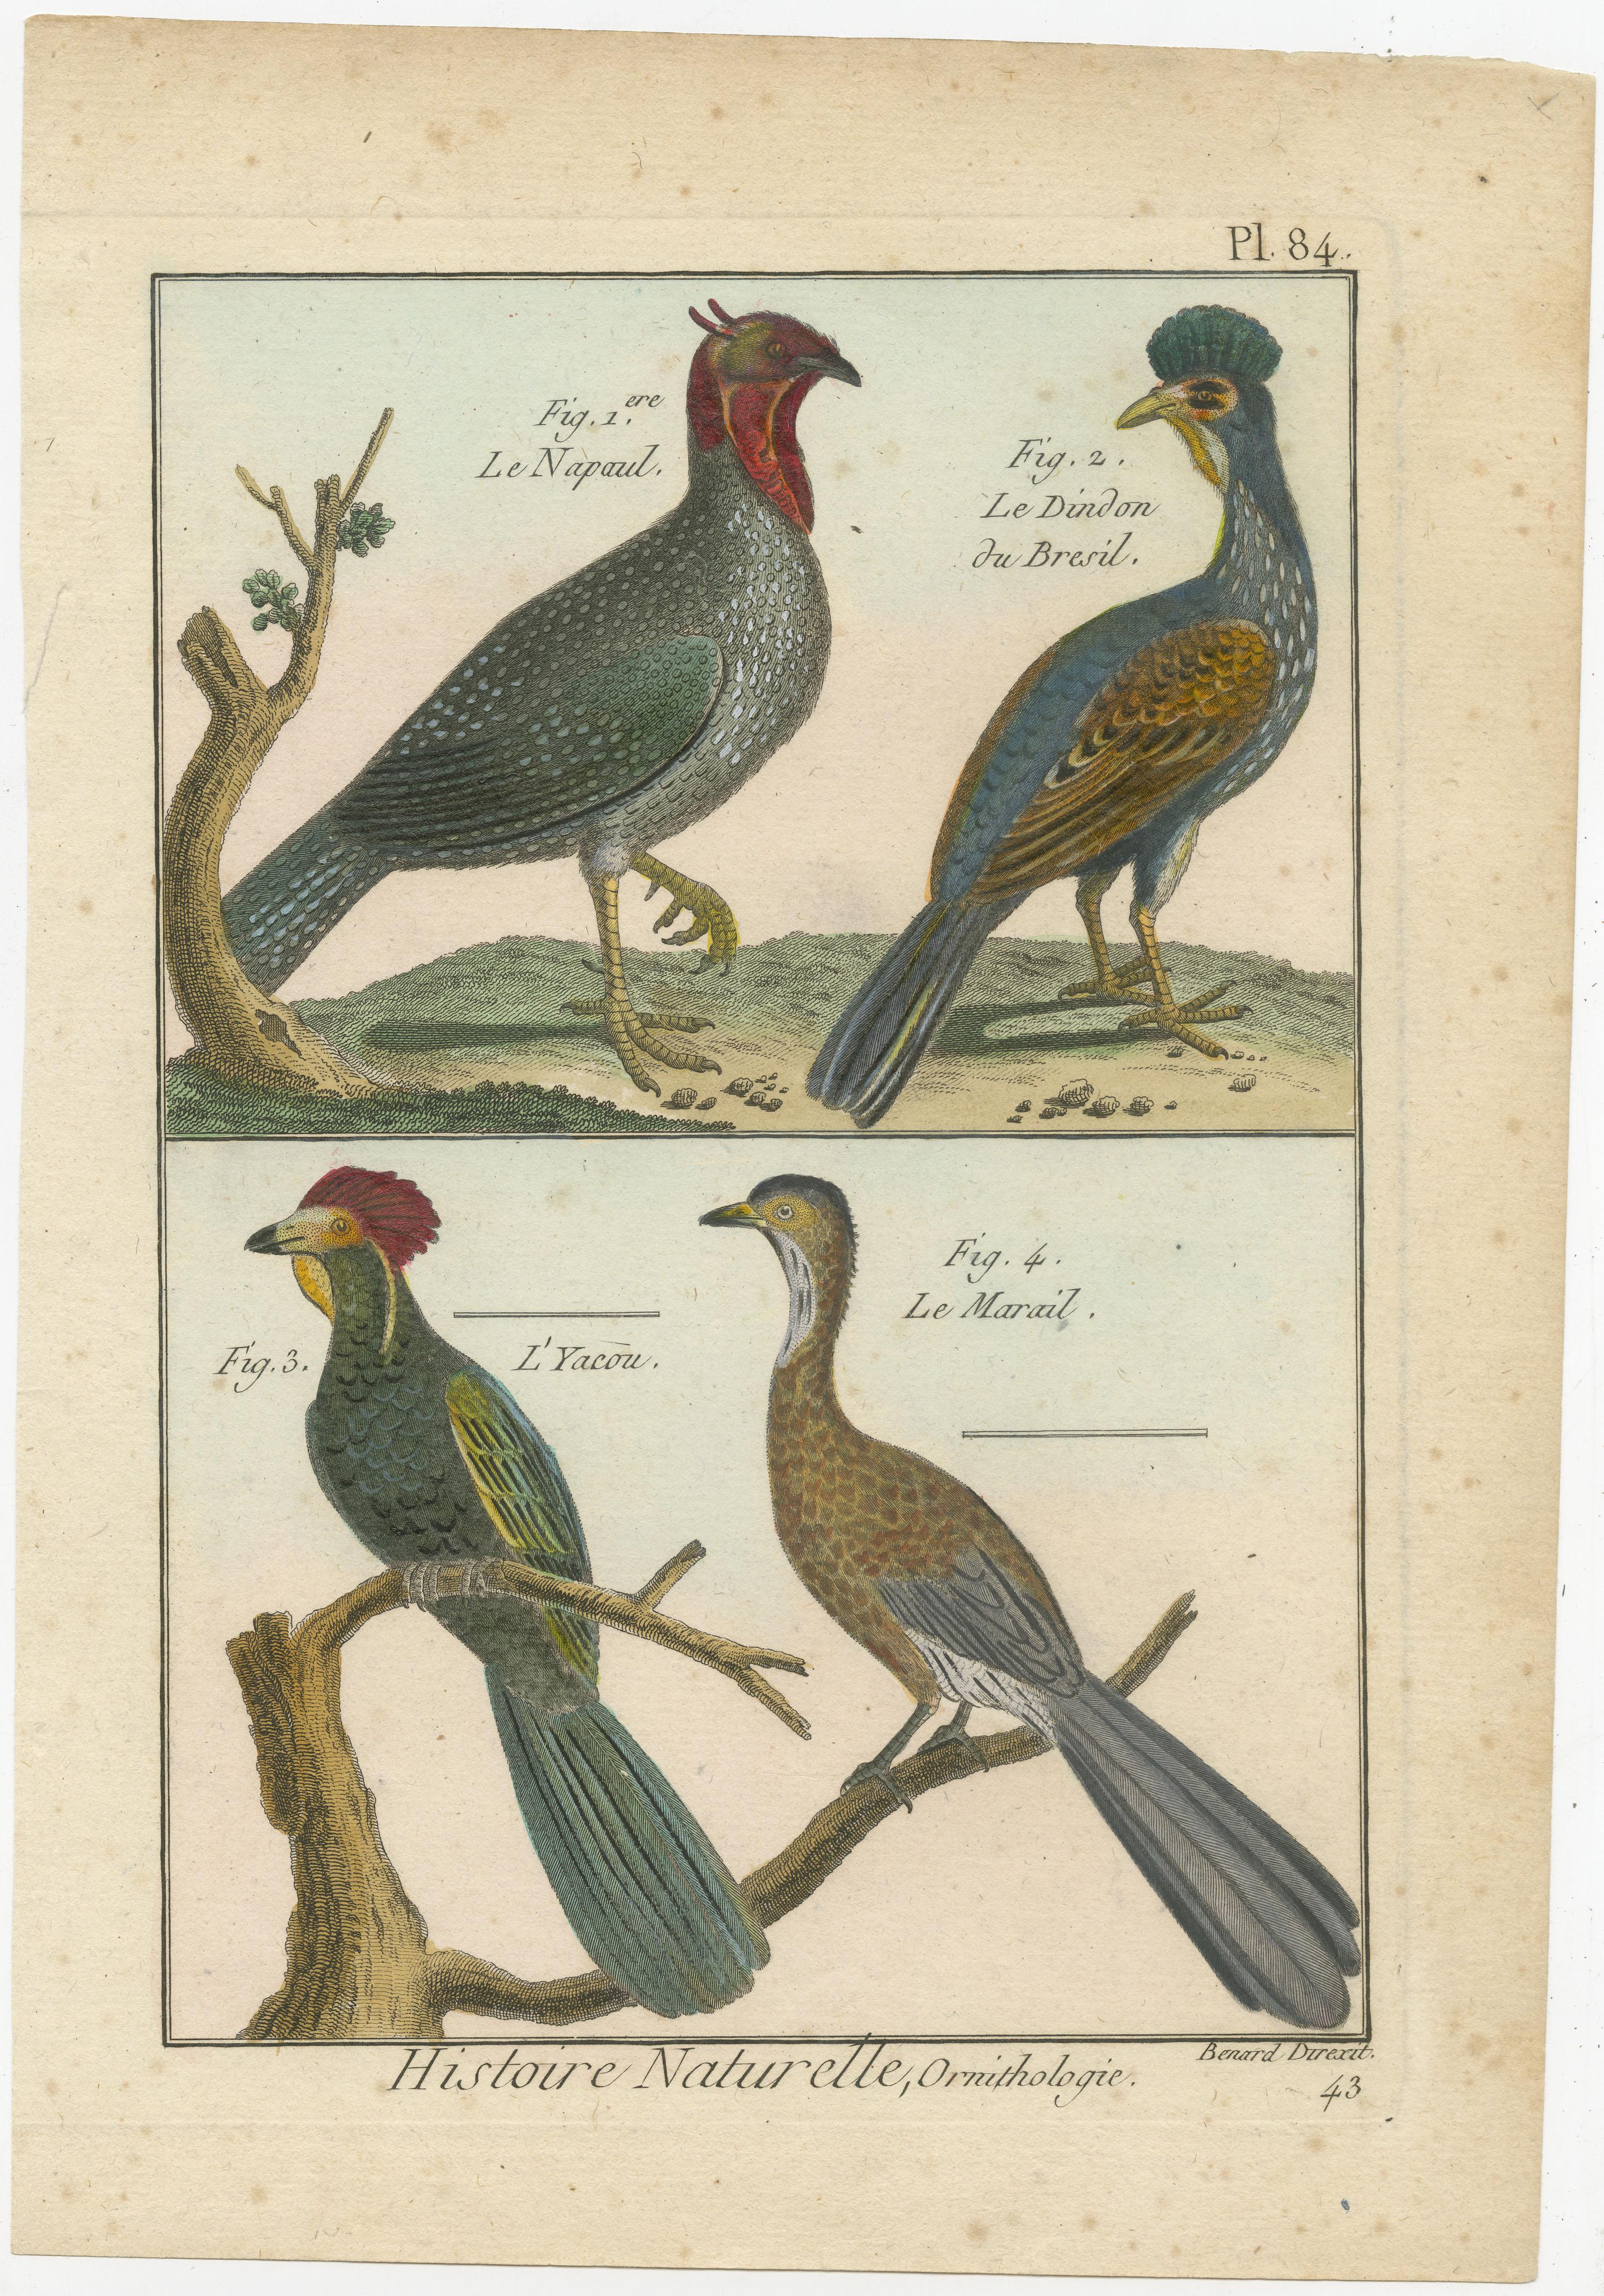 Eine authentische perfekte und helle, ursprünglich handkolorierte Illustration von vier Vögeln, auf Pergamentpapier (Kupferstich). Es hat einen feinen Glanz durch das authentisch aufgetragene Eigelb als Firnis. Der Künstler ist Robert Bernard